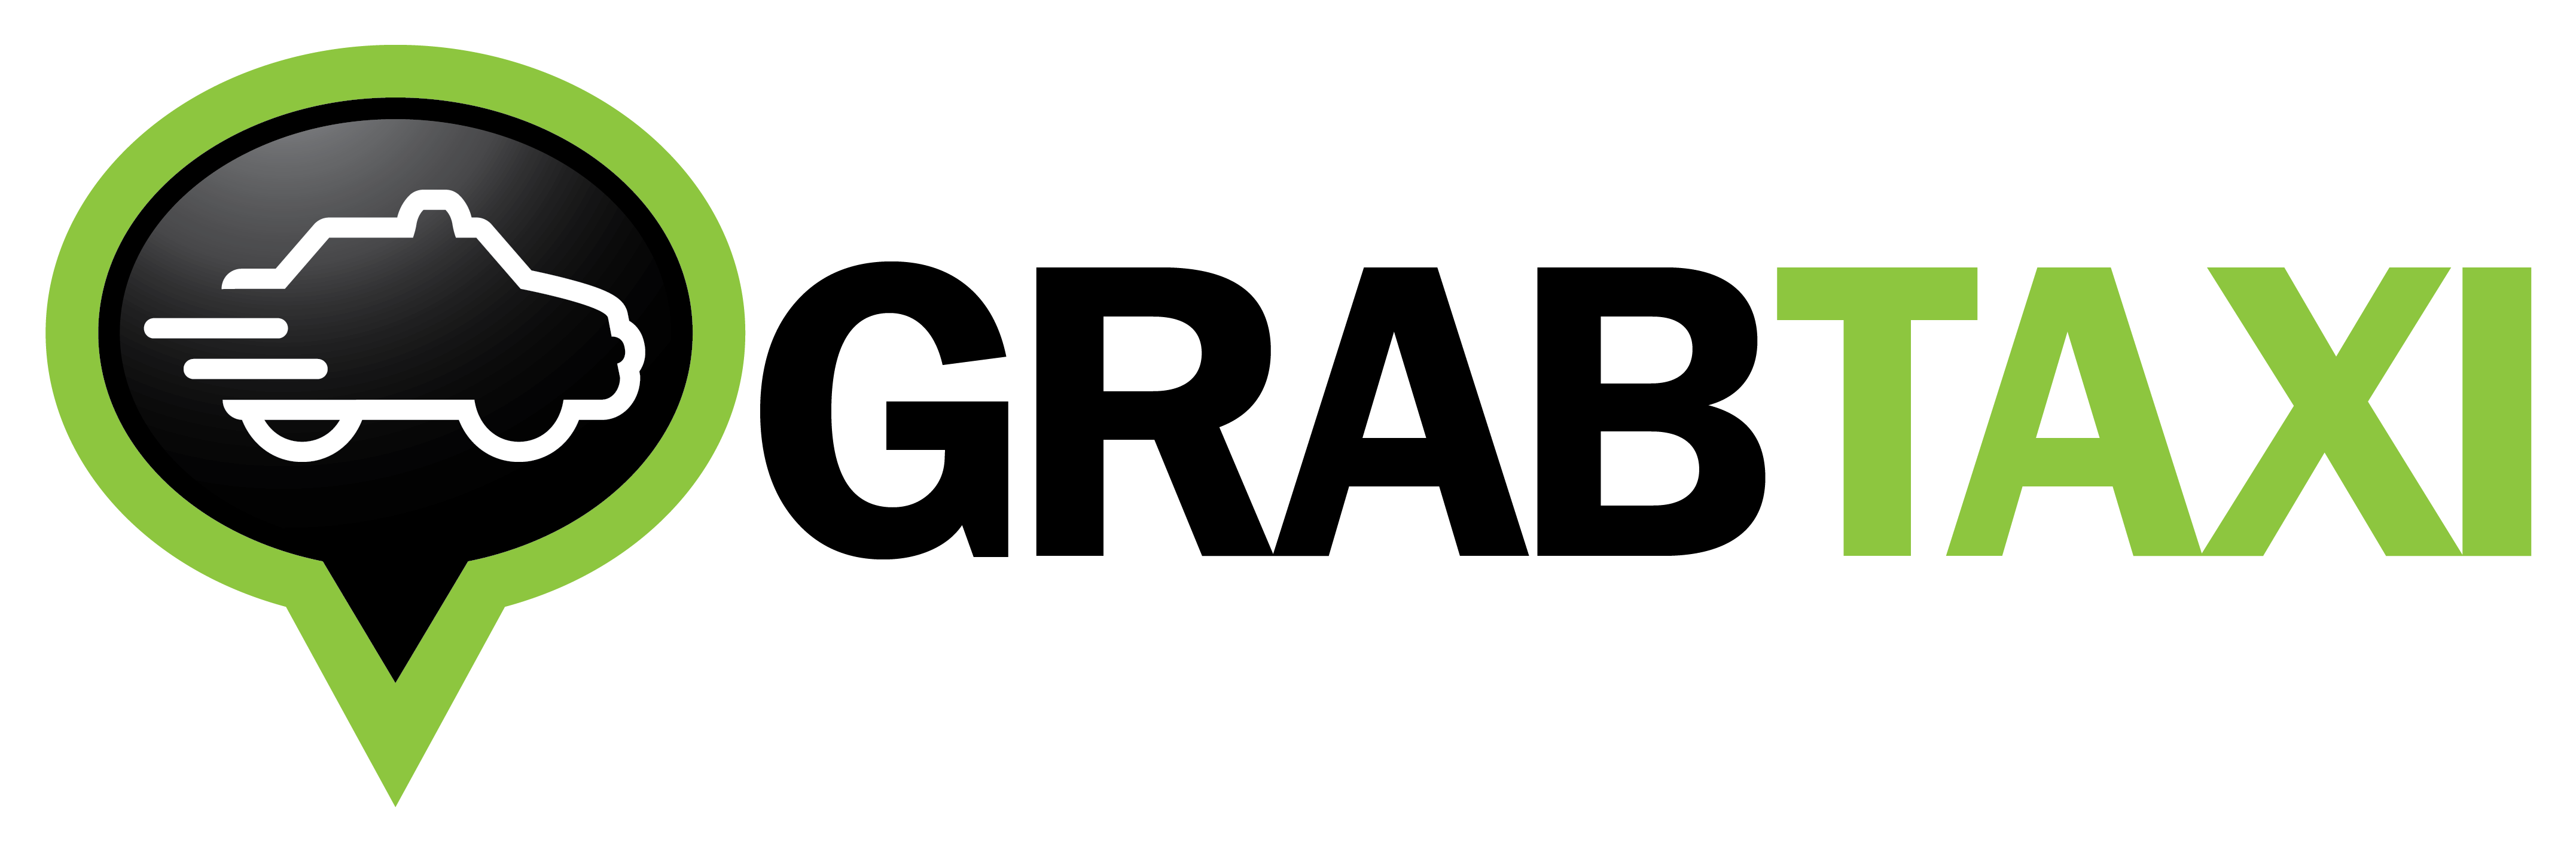 Grab Car Logo - Grabcar logo png 2 » PNG Image